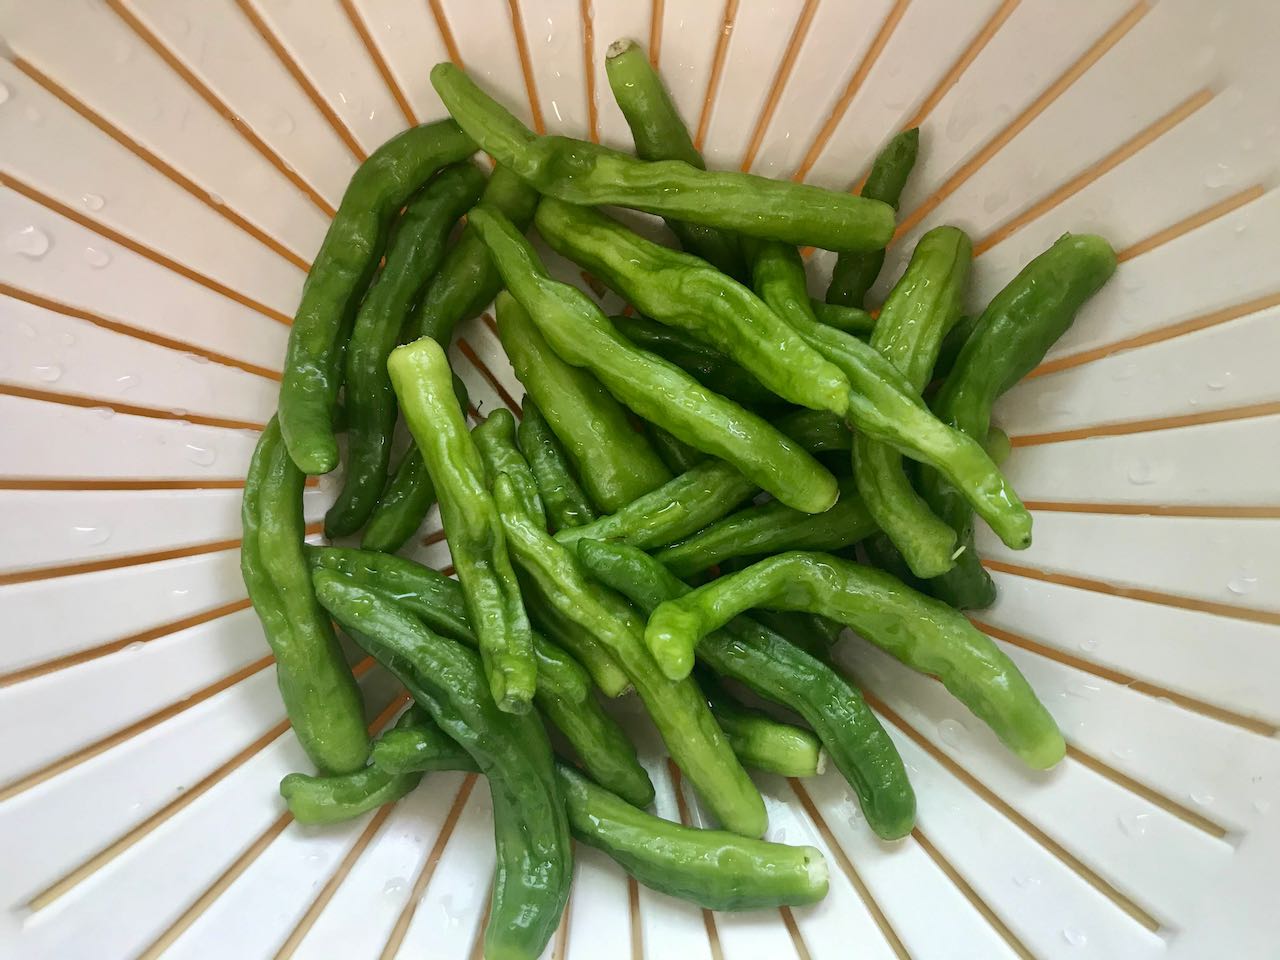 /lifelog/assets/2021-03-28-cooking-steamed-green-pepper-01.jpg